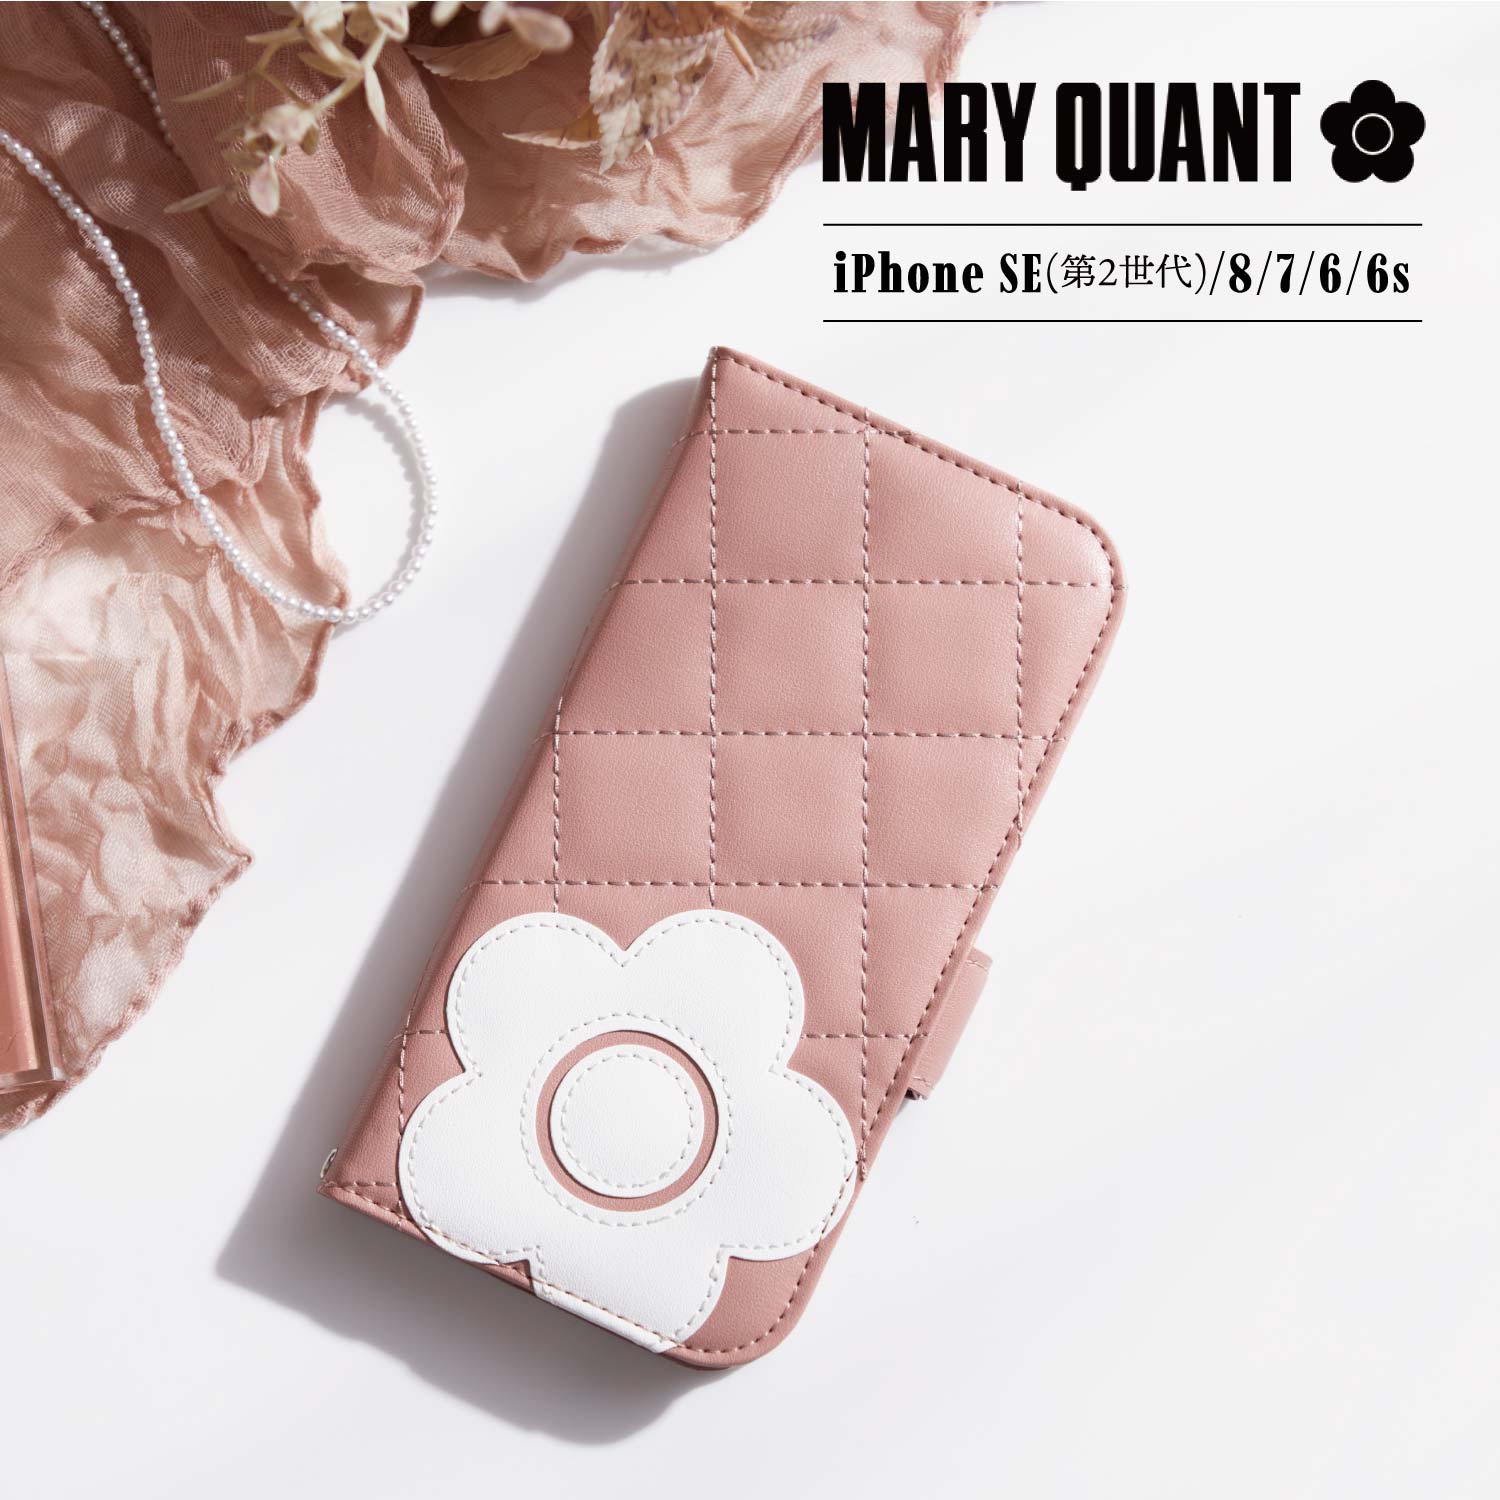 マリークヮント スマホケース レディース マリークヮント MARY QUANT iPhone SE 8 ケース スマホケース 携帯 アイフォン 手帳型 レディース マリクワ PU QUILT LEATHER BOOK TYPE CASE IPSE-MQ01 母の日